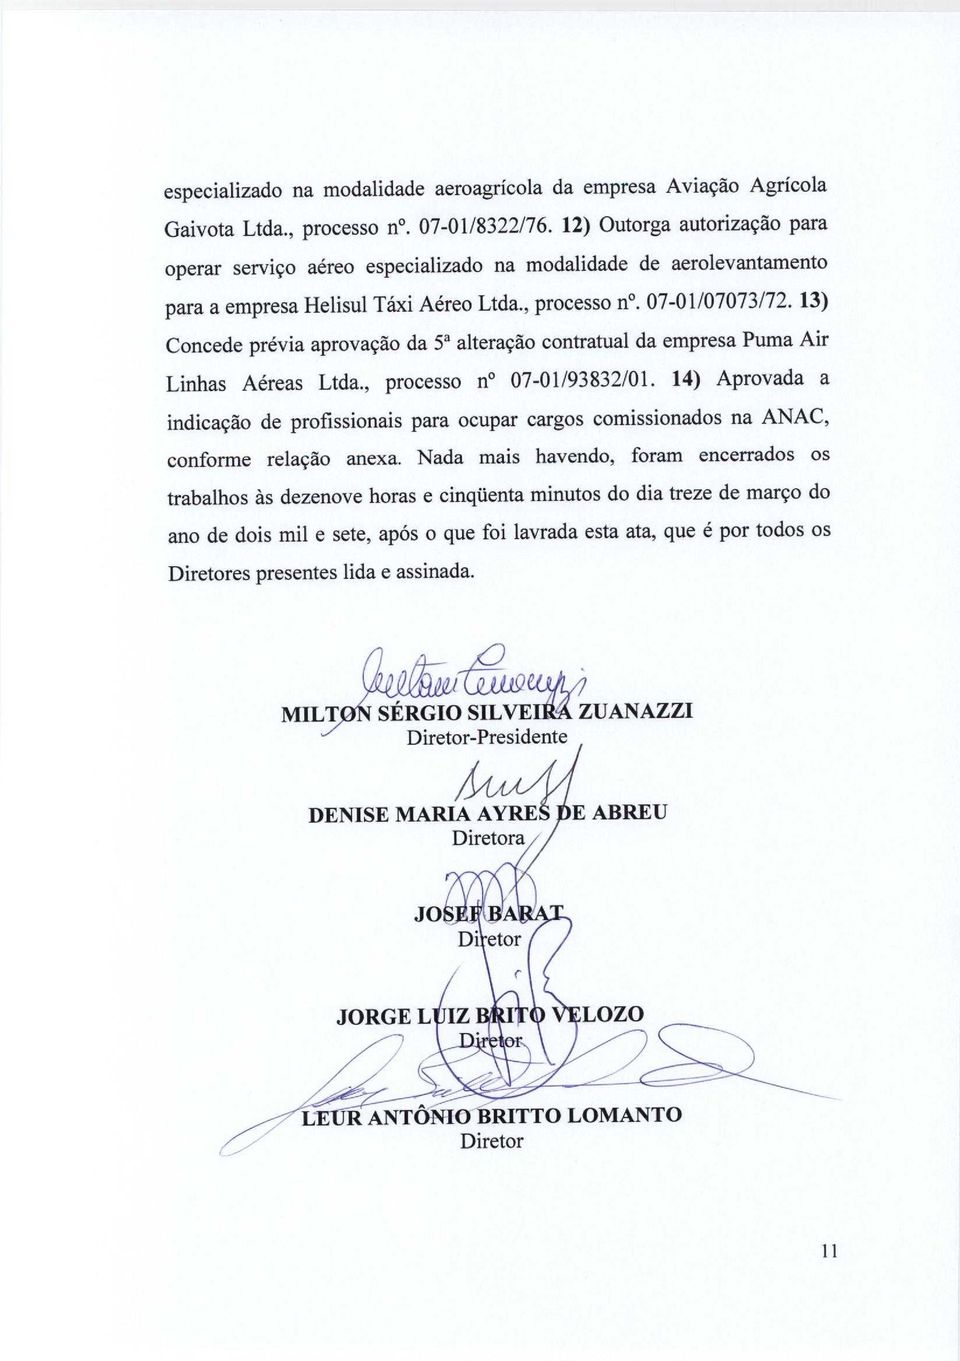 13) Concede previa aprovacao da 5a alterarao contratual da empresa Puma Air Linhas Aereas Ltda., processo n 07-01/93832/01.